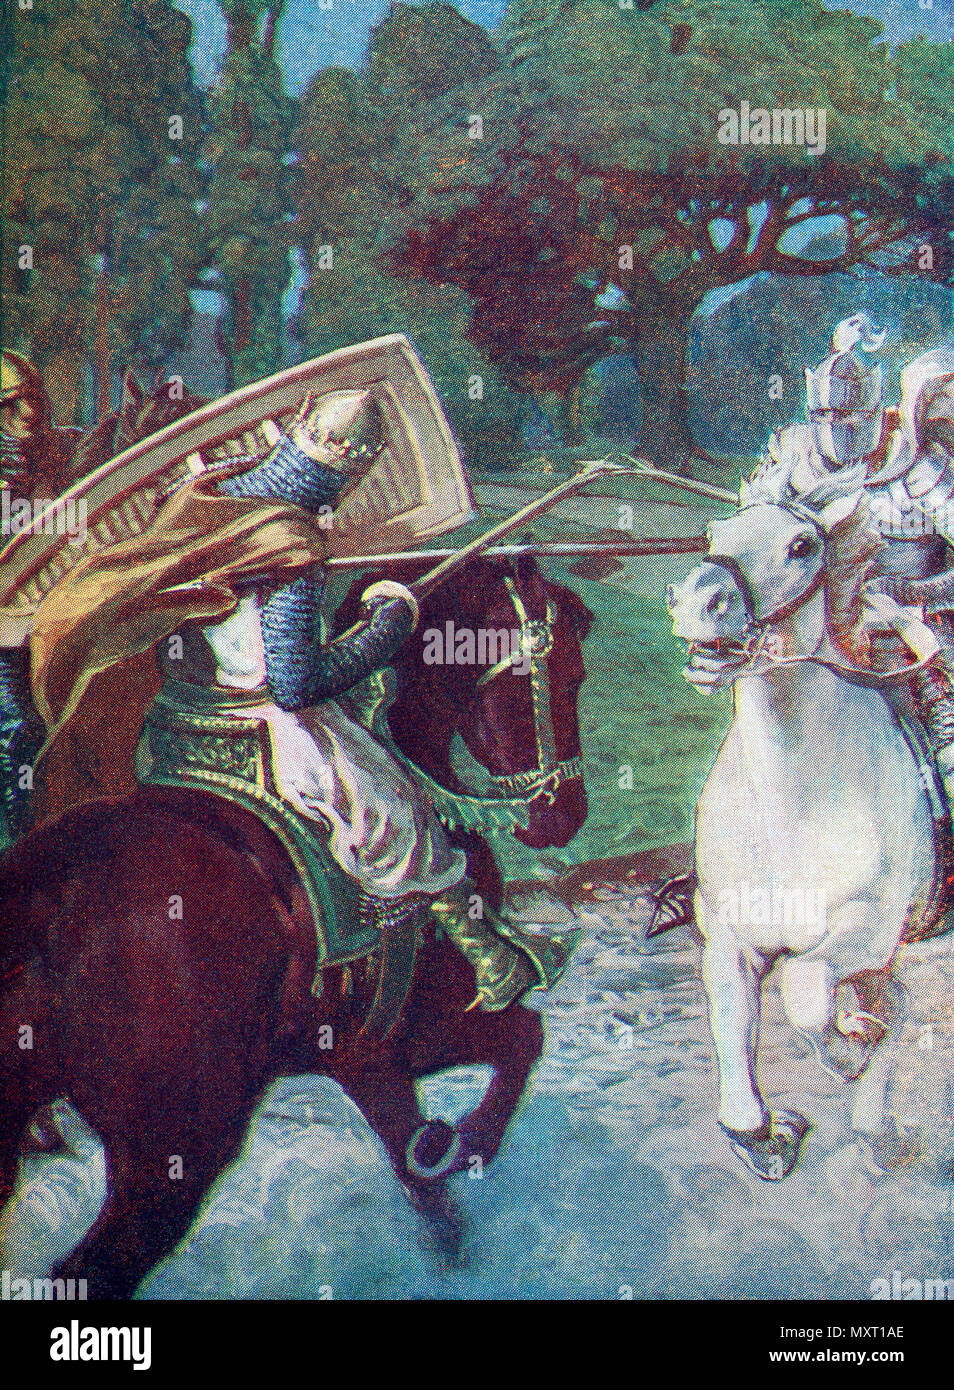 Bagdemagus a brisé sa propre lance contre l'armure de son ennemi. De Knights of the Grail : Lohengrin, Galahad publié en 1909. Banque D'Images